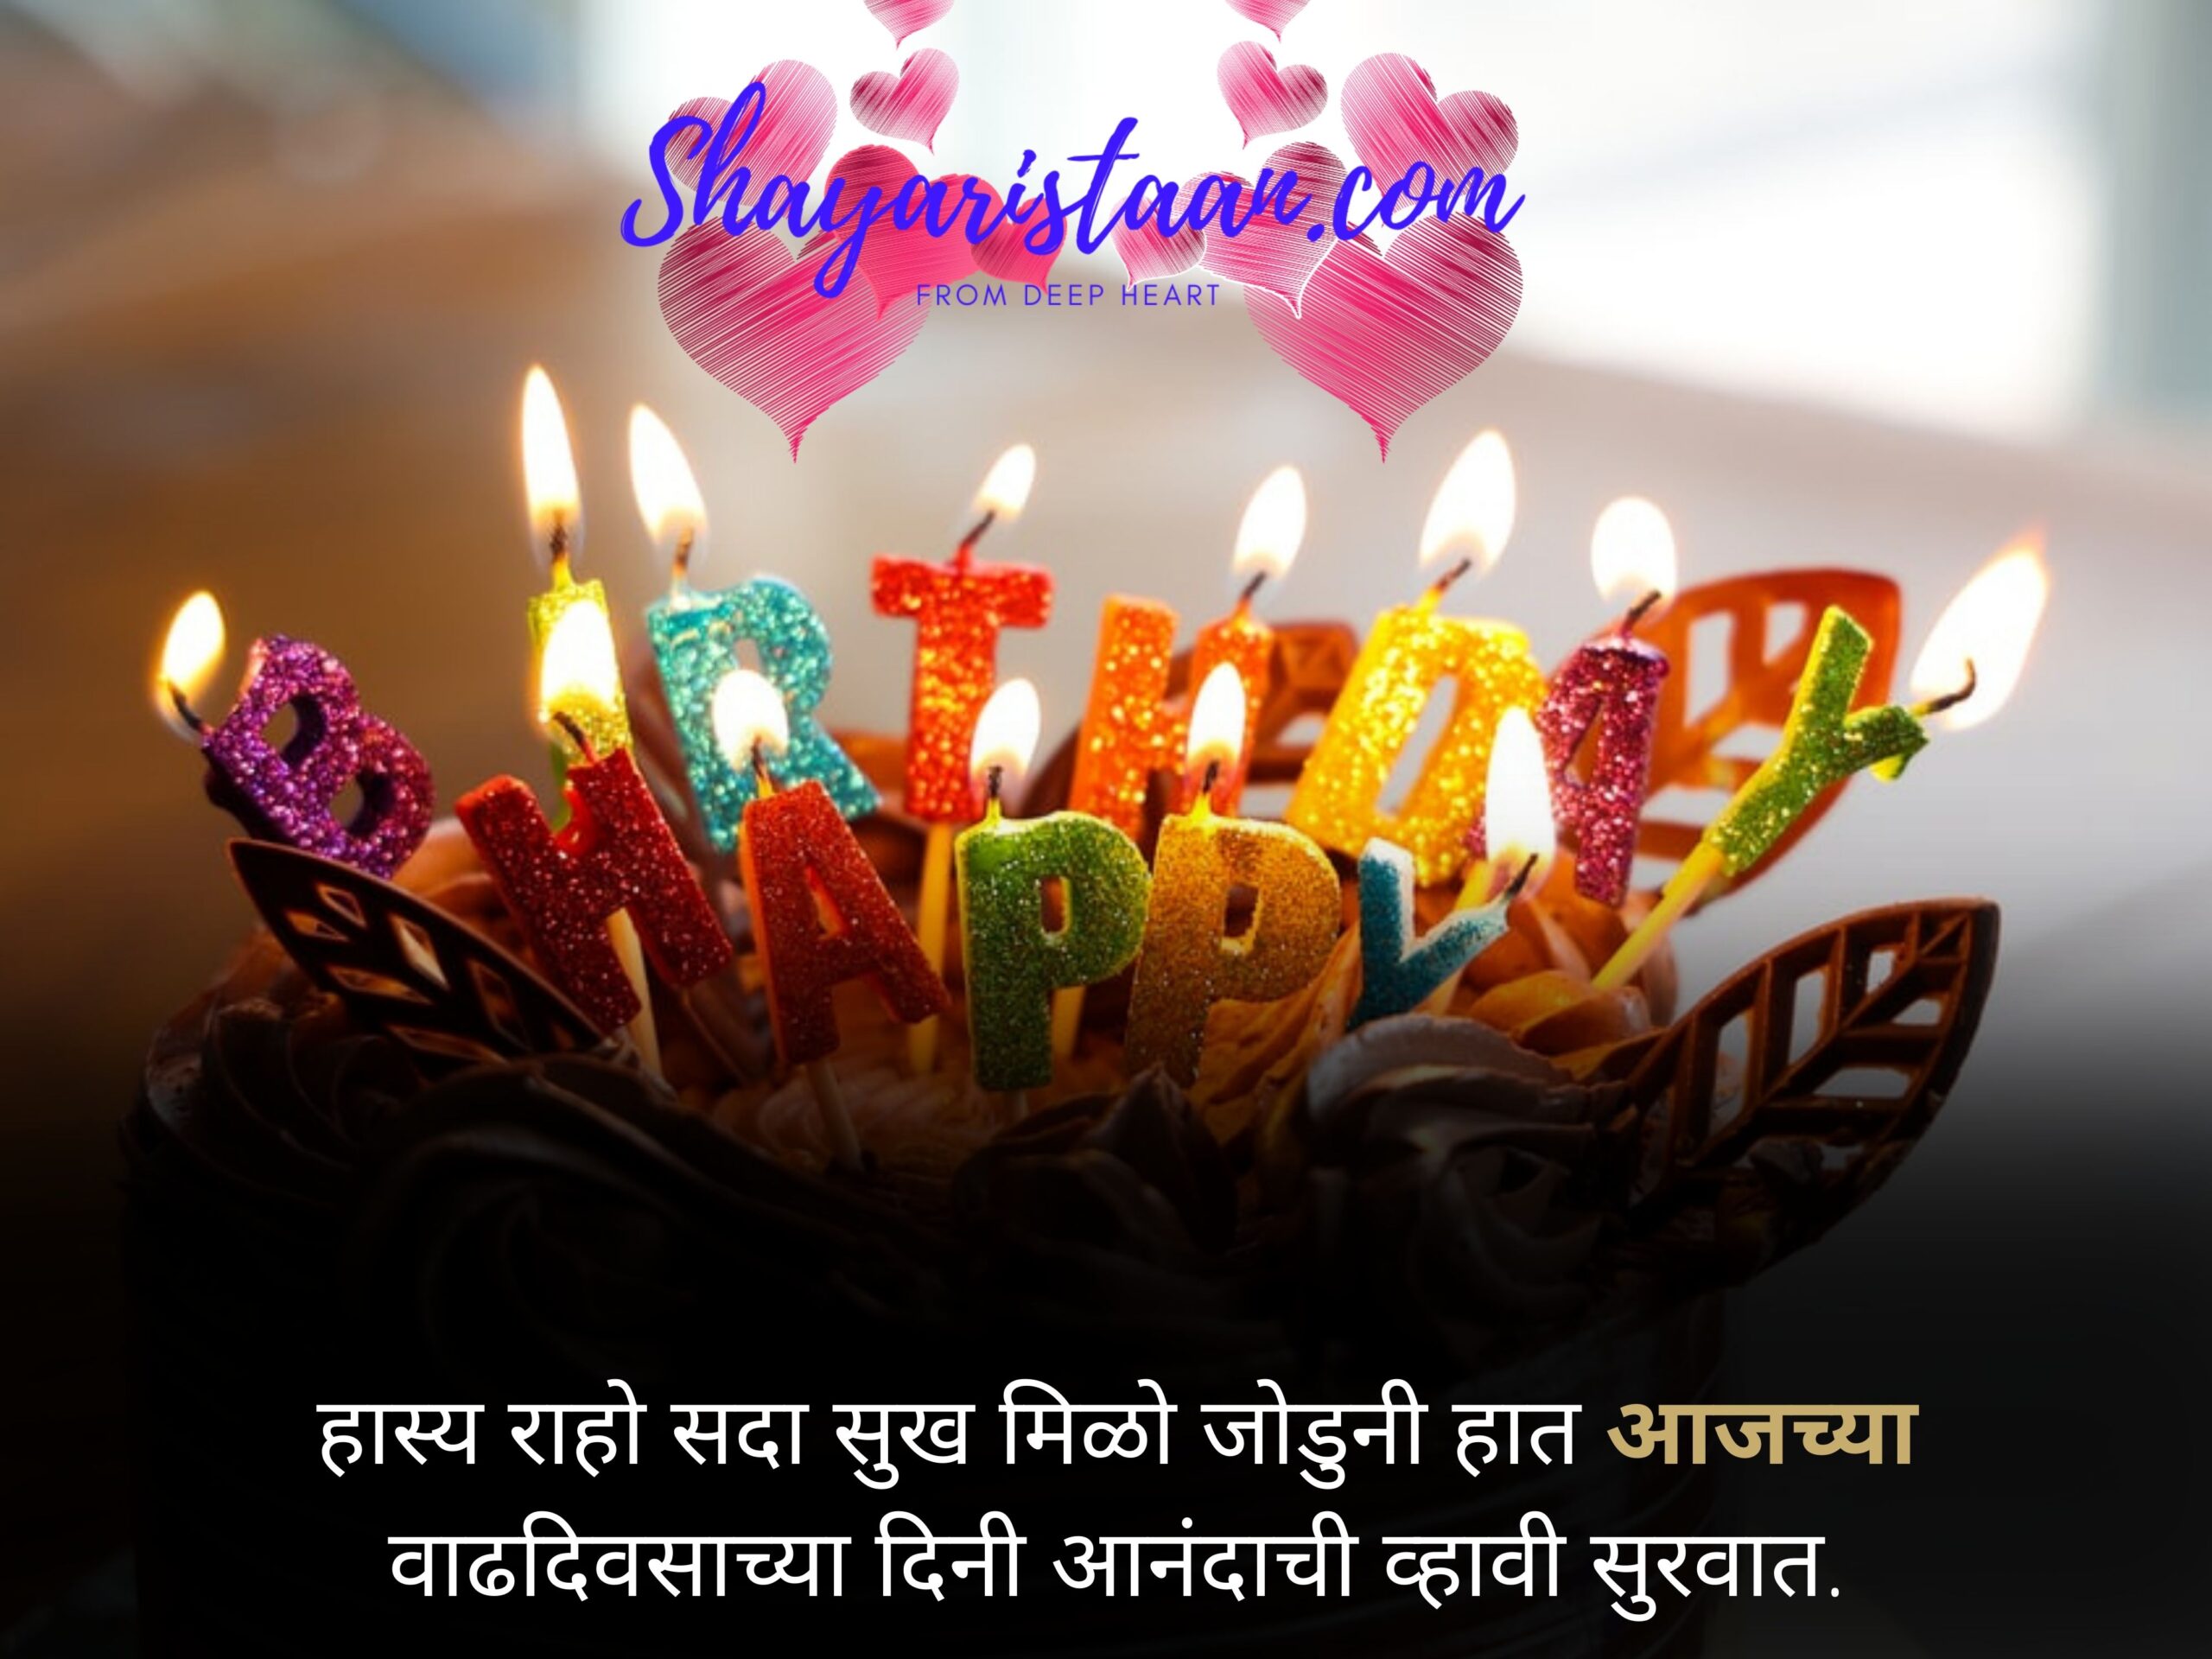 birthday wishes images in marathi  | हास्य राहो सदा सुख मिळो जोडुनी हात  आजच्या वाढदिवसाच्या दिनी आनंदाची व्हावी सुरवात |